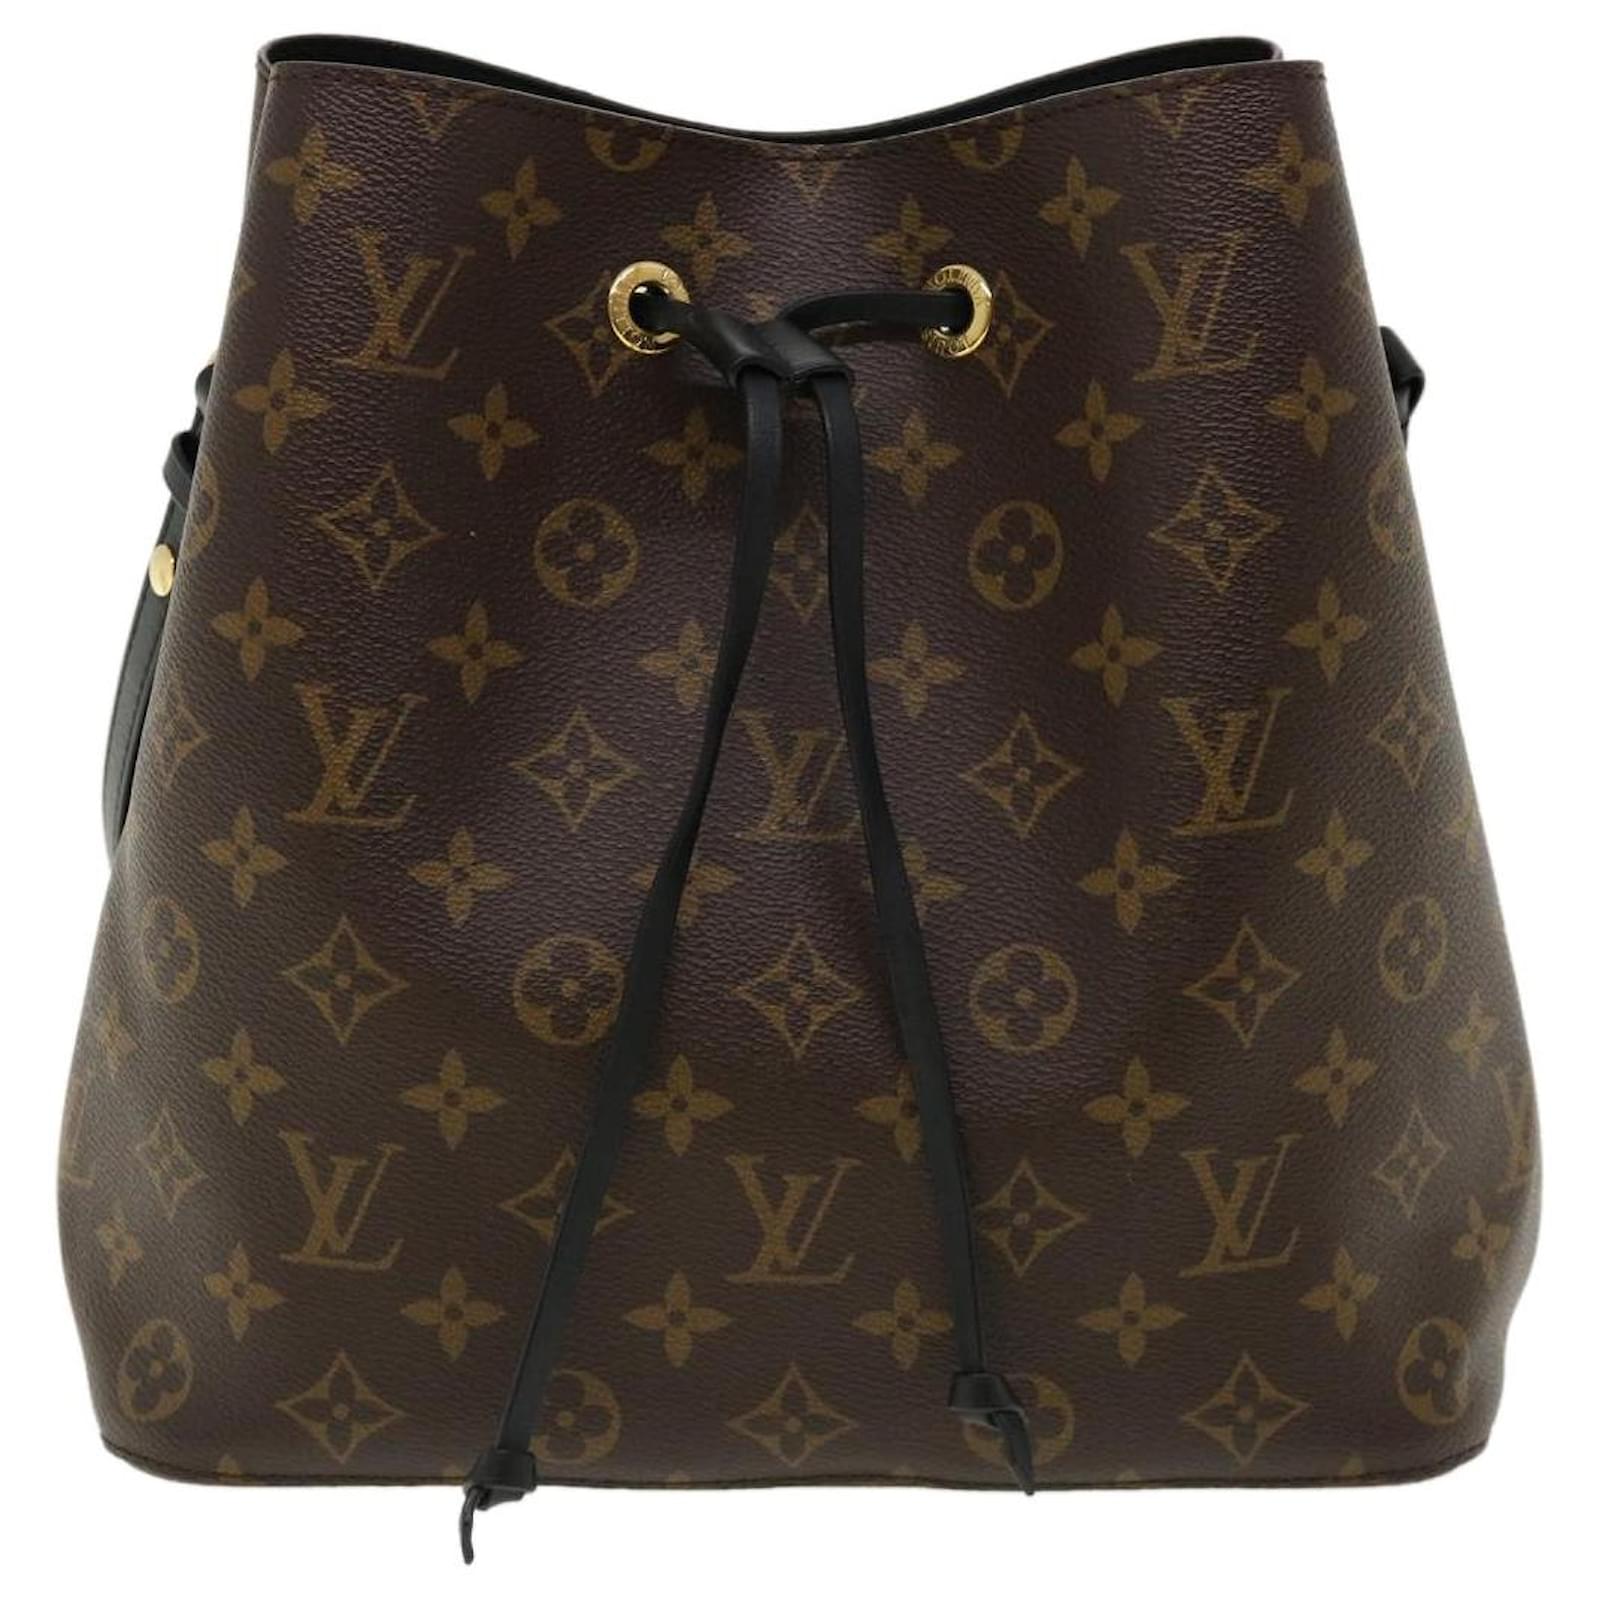 Louis Vuitton Noir Neo Vivienne NM Crossbody Bag – The Closet